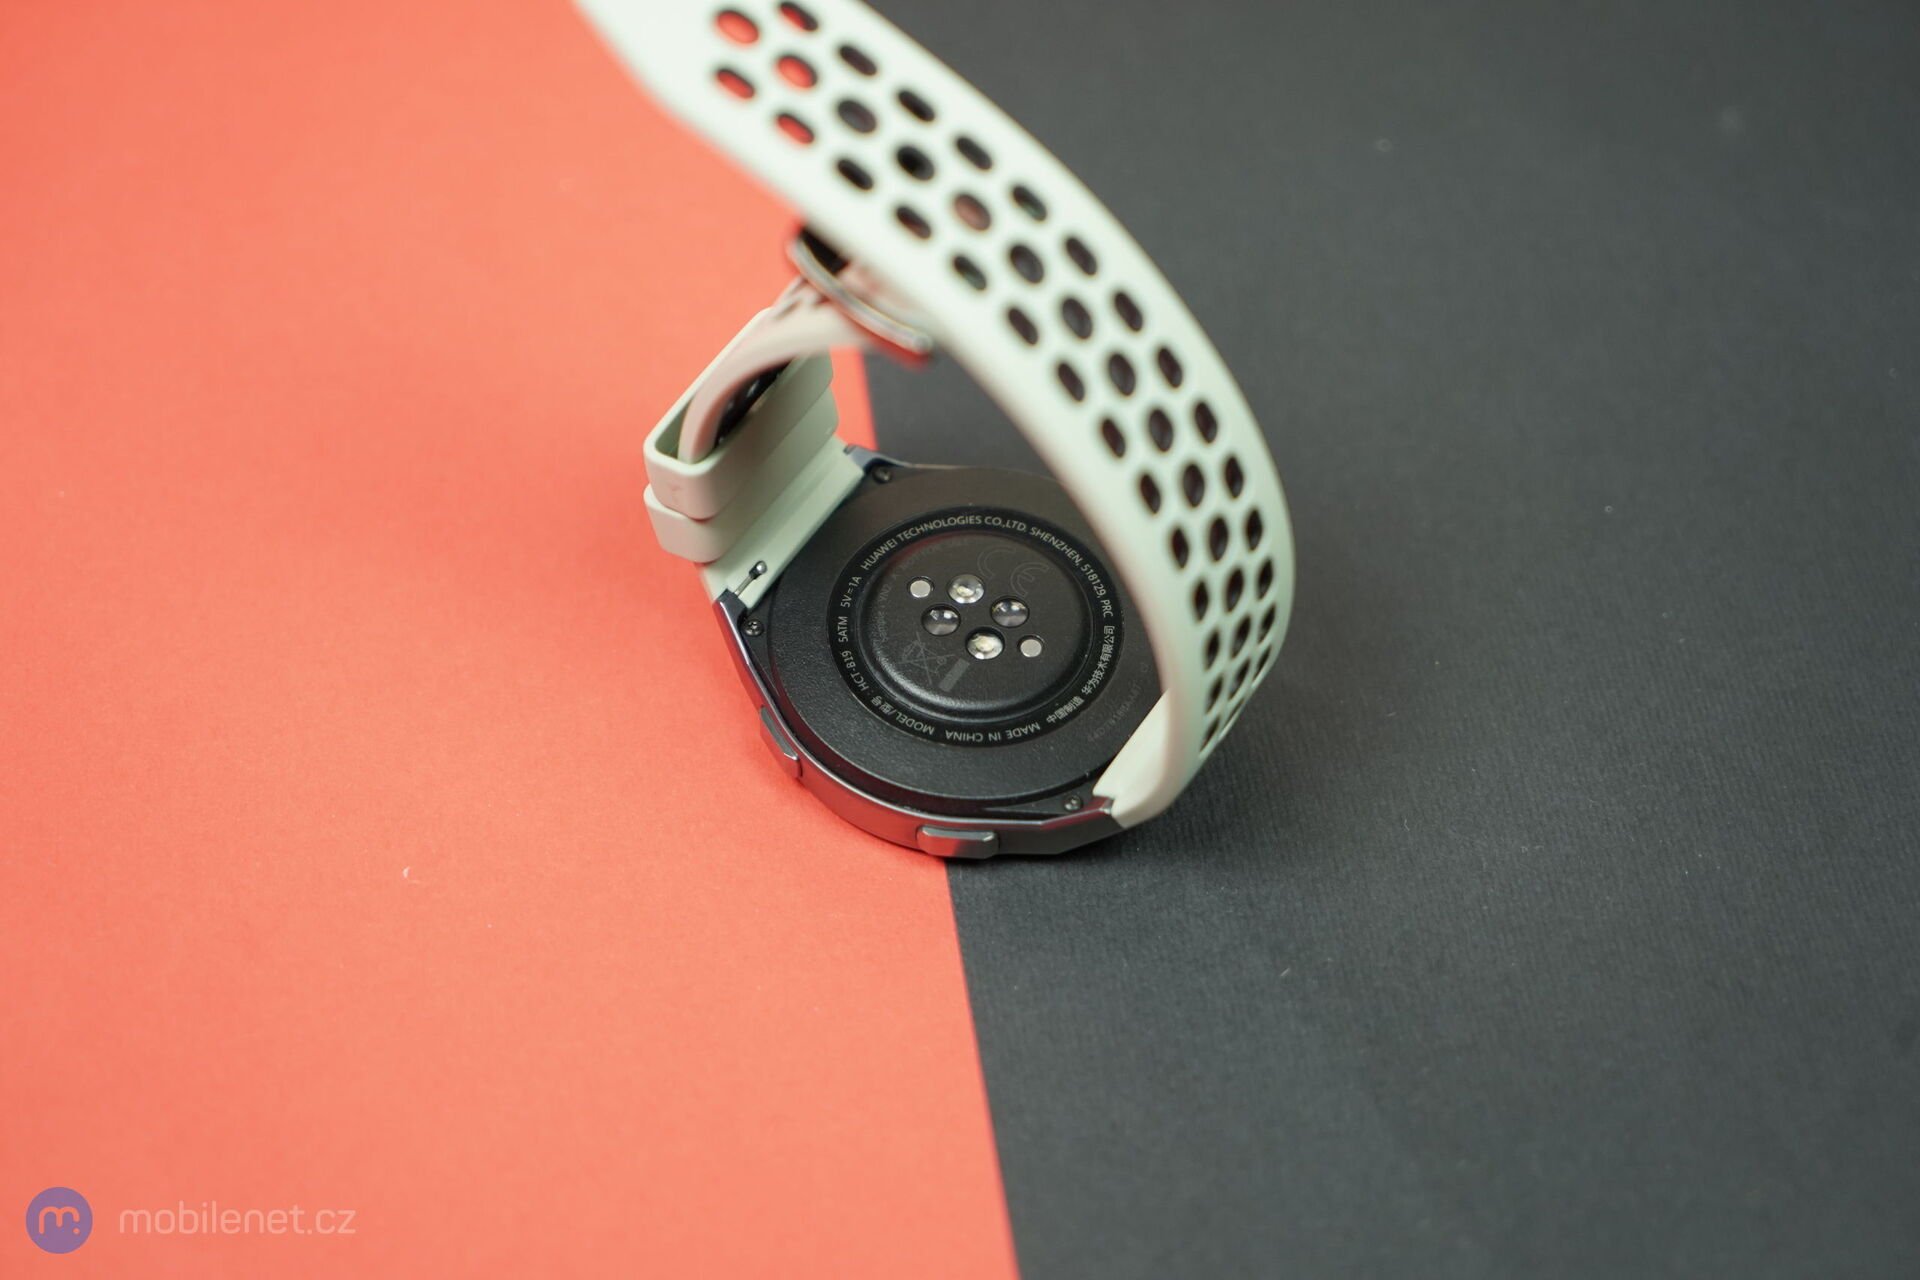 Huawei Watch GT2e